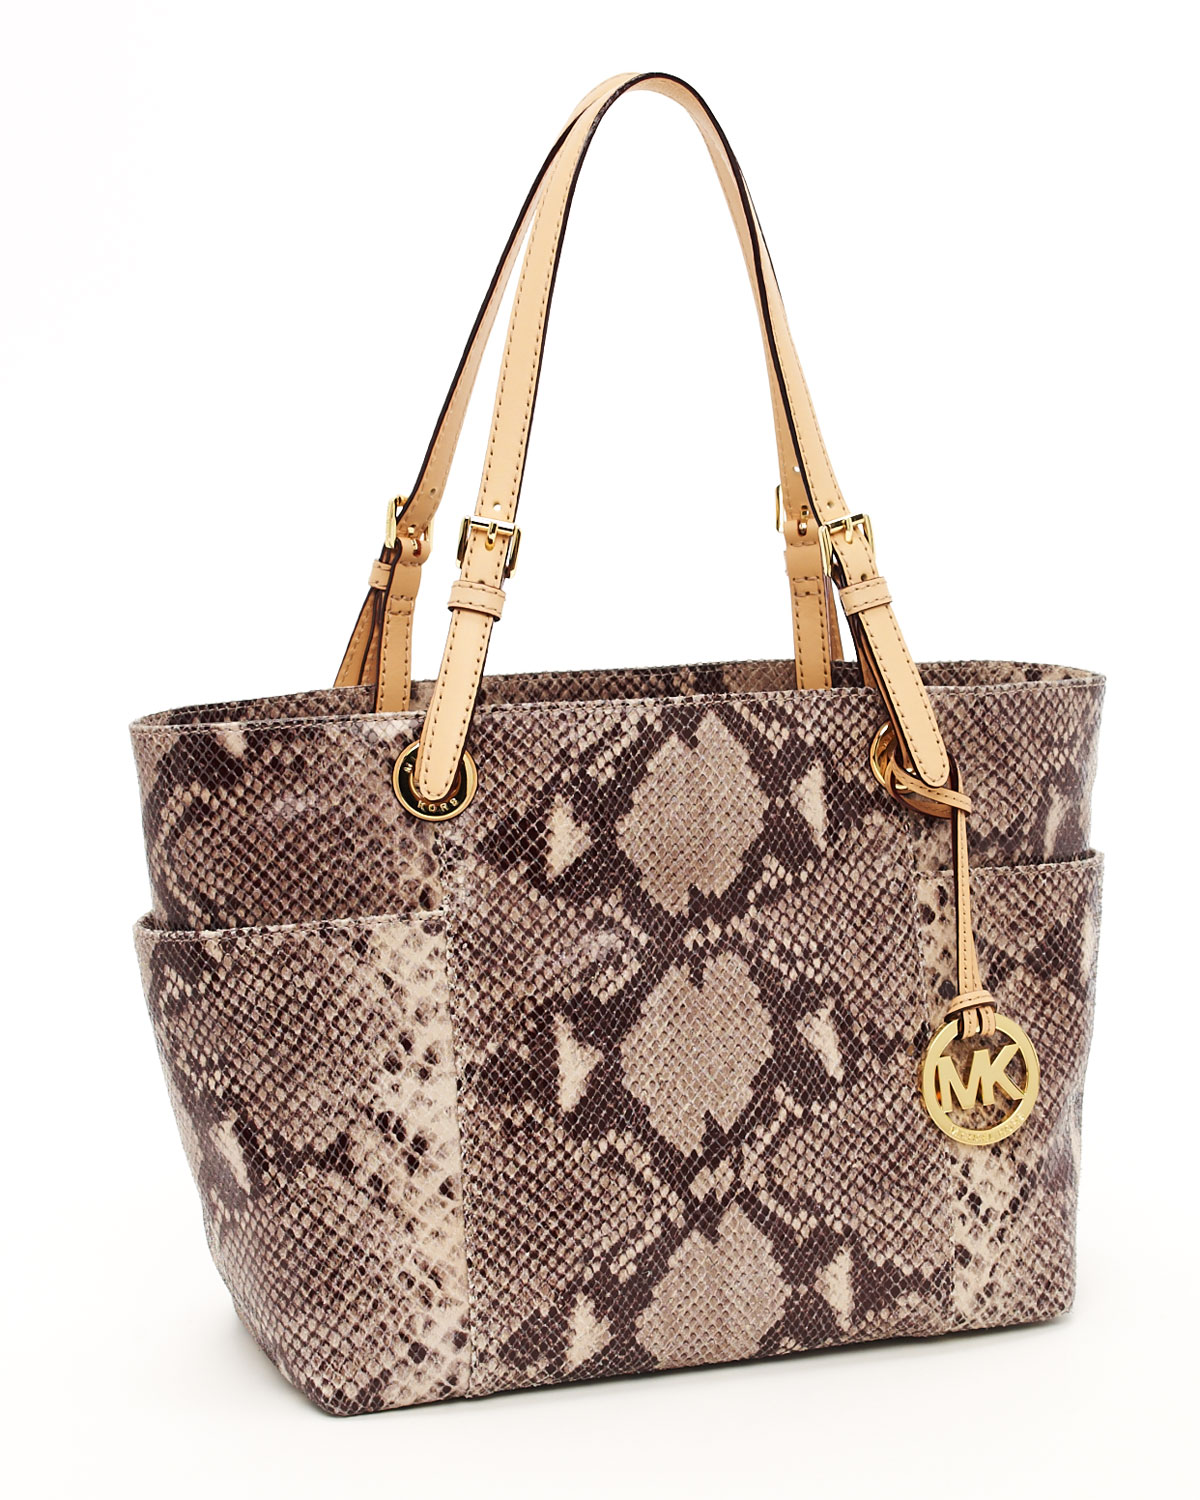 michael kors python handbag | Sale OFF-53%